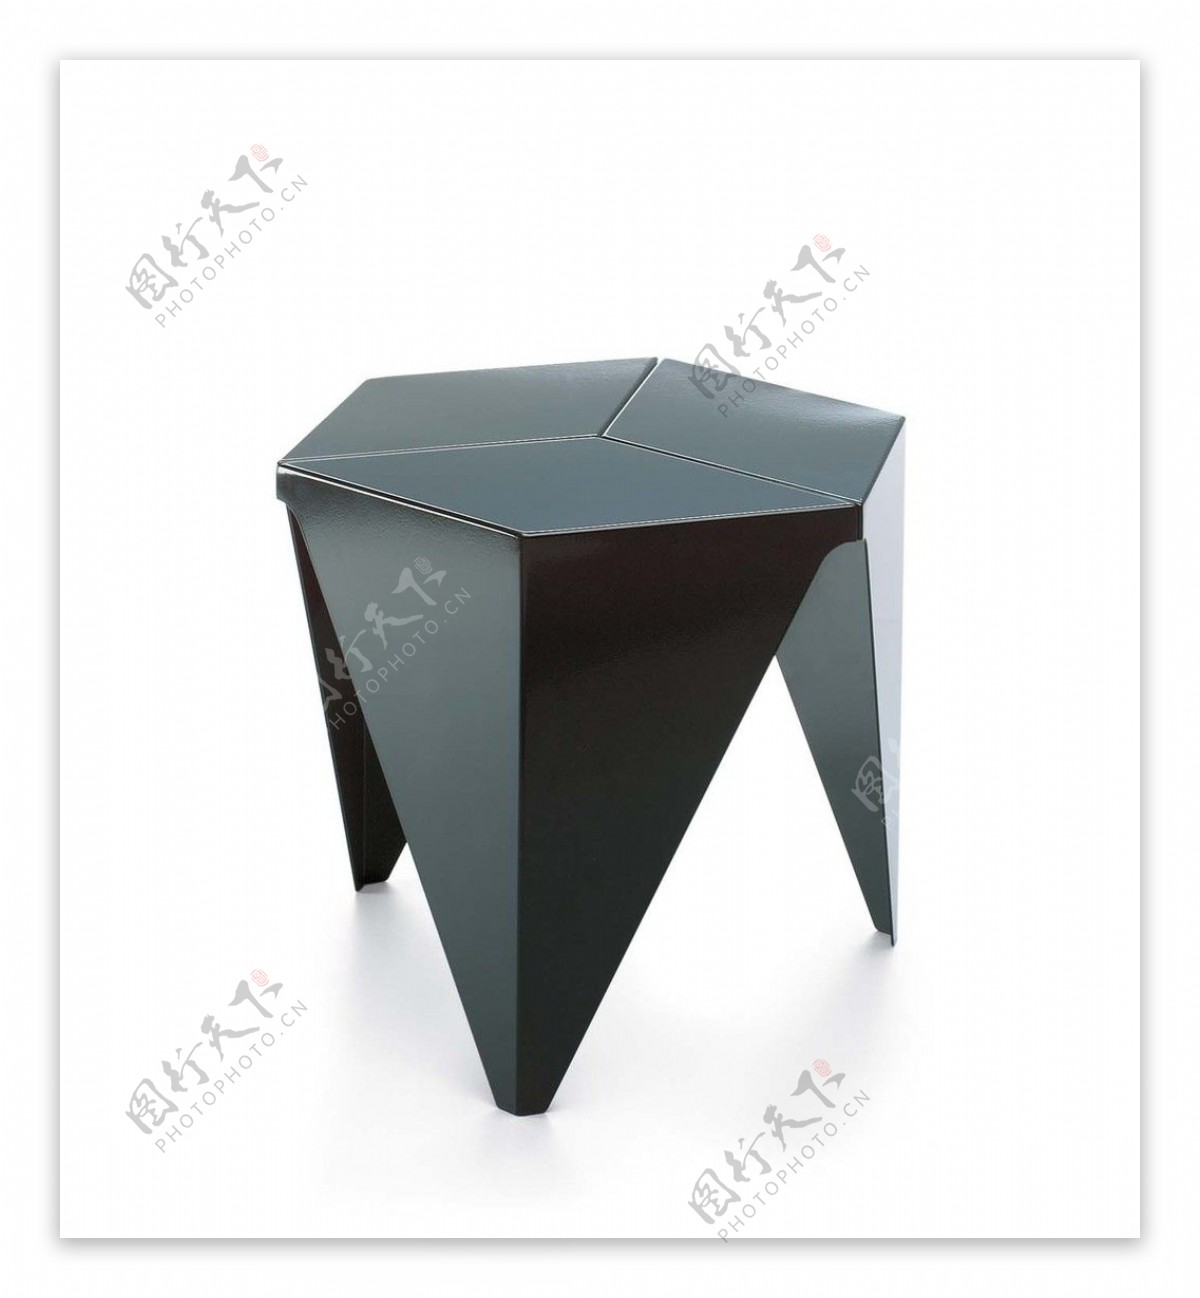 时尚创意黑色六边形凳子模型素材